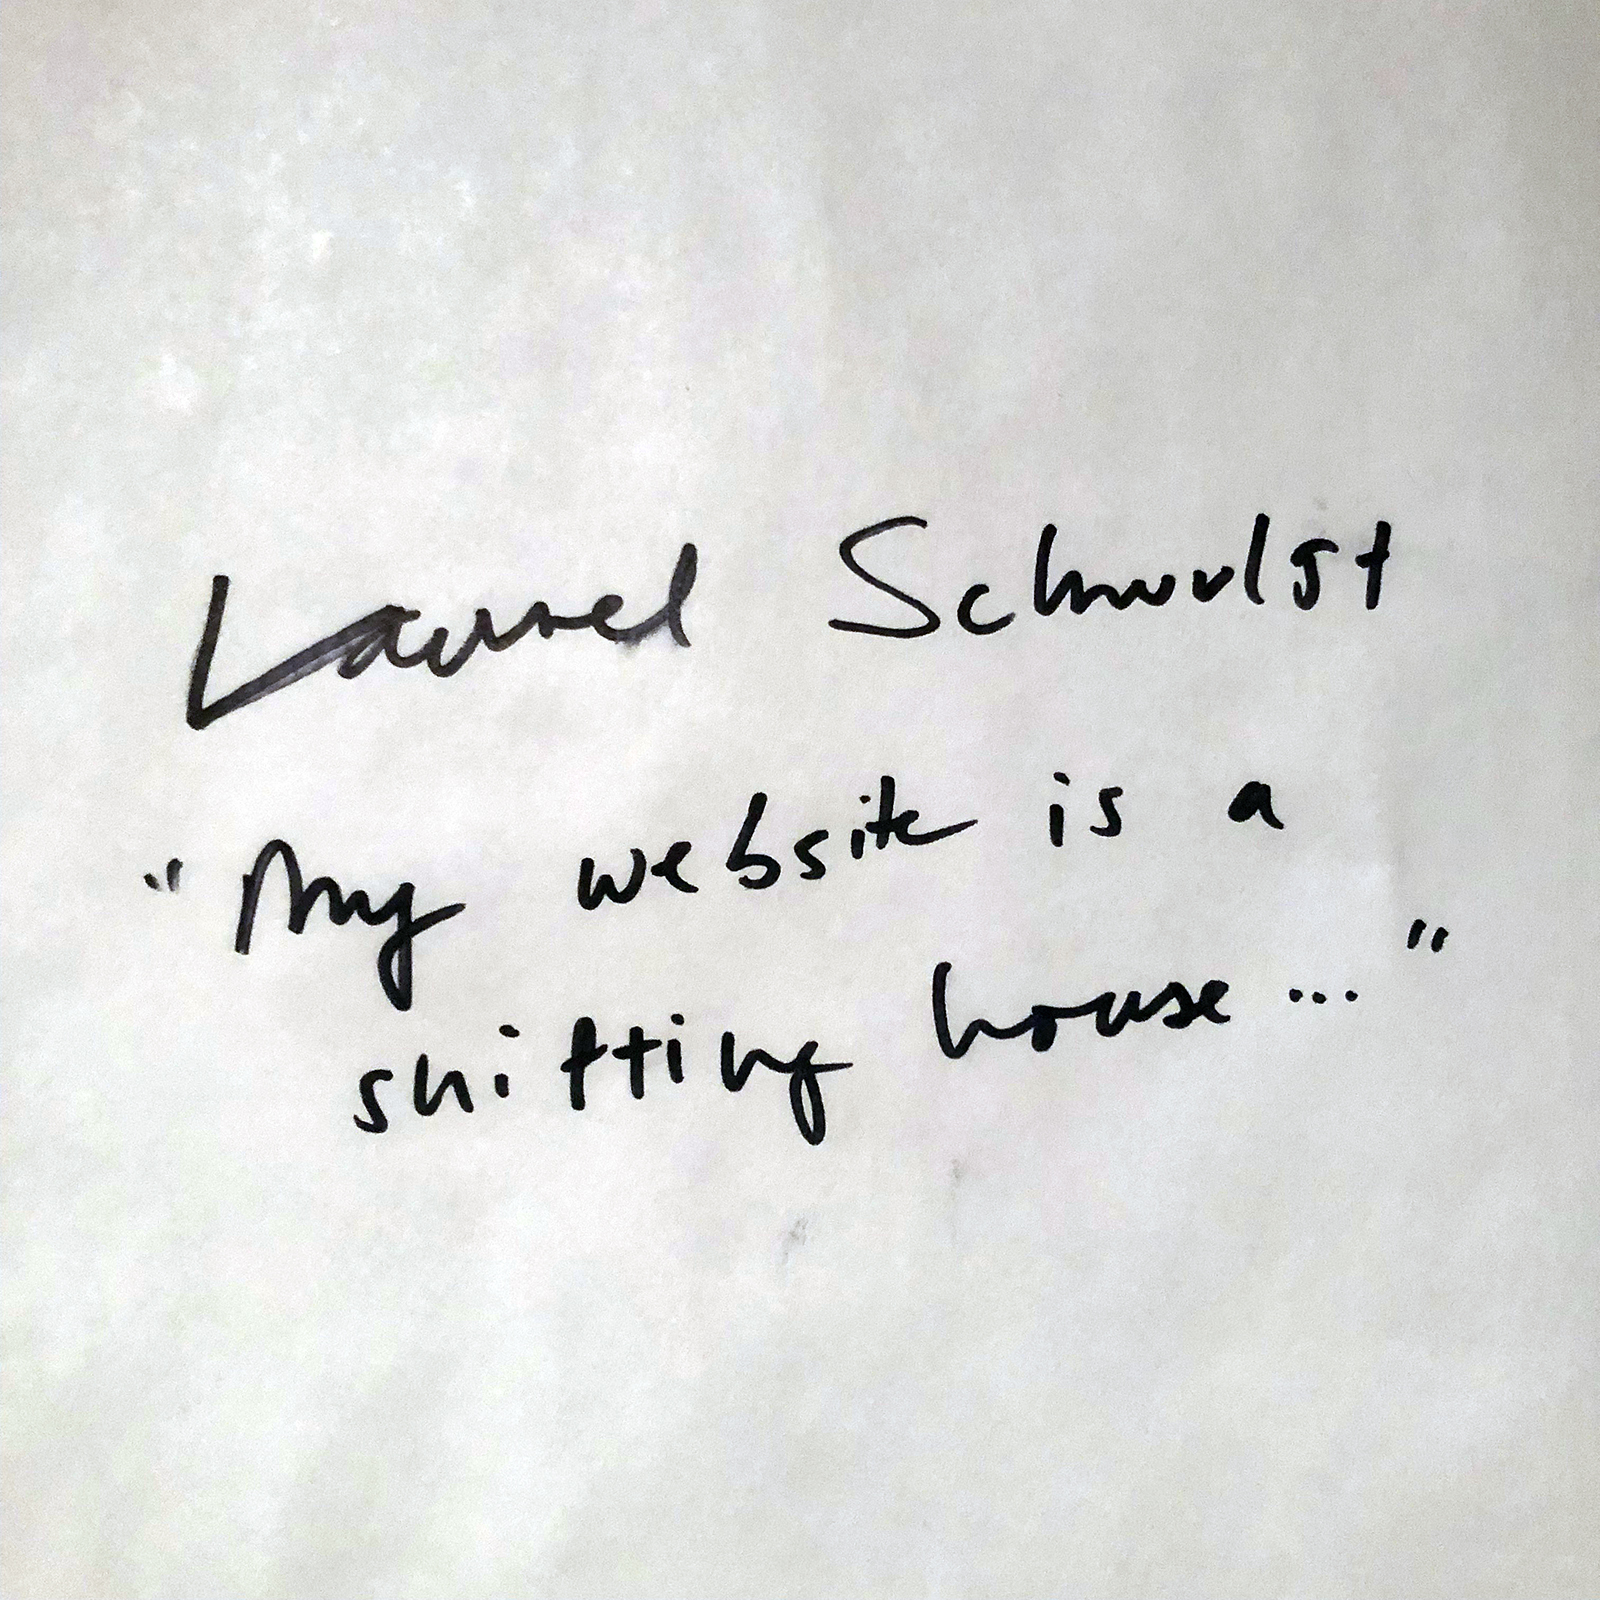 Laurel Schwulst, My website is...